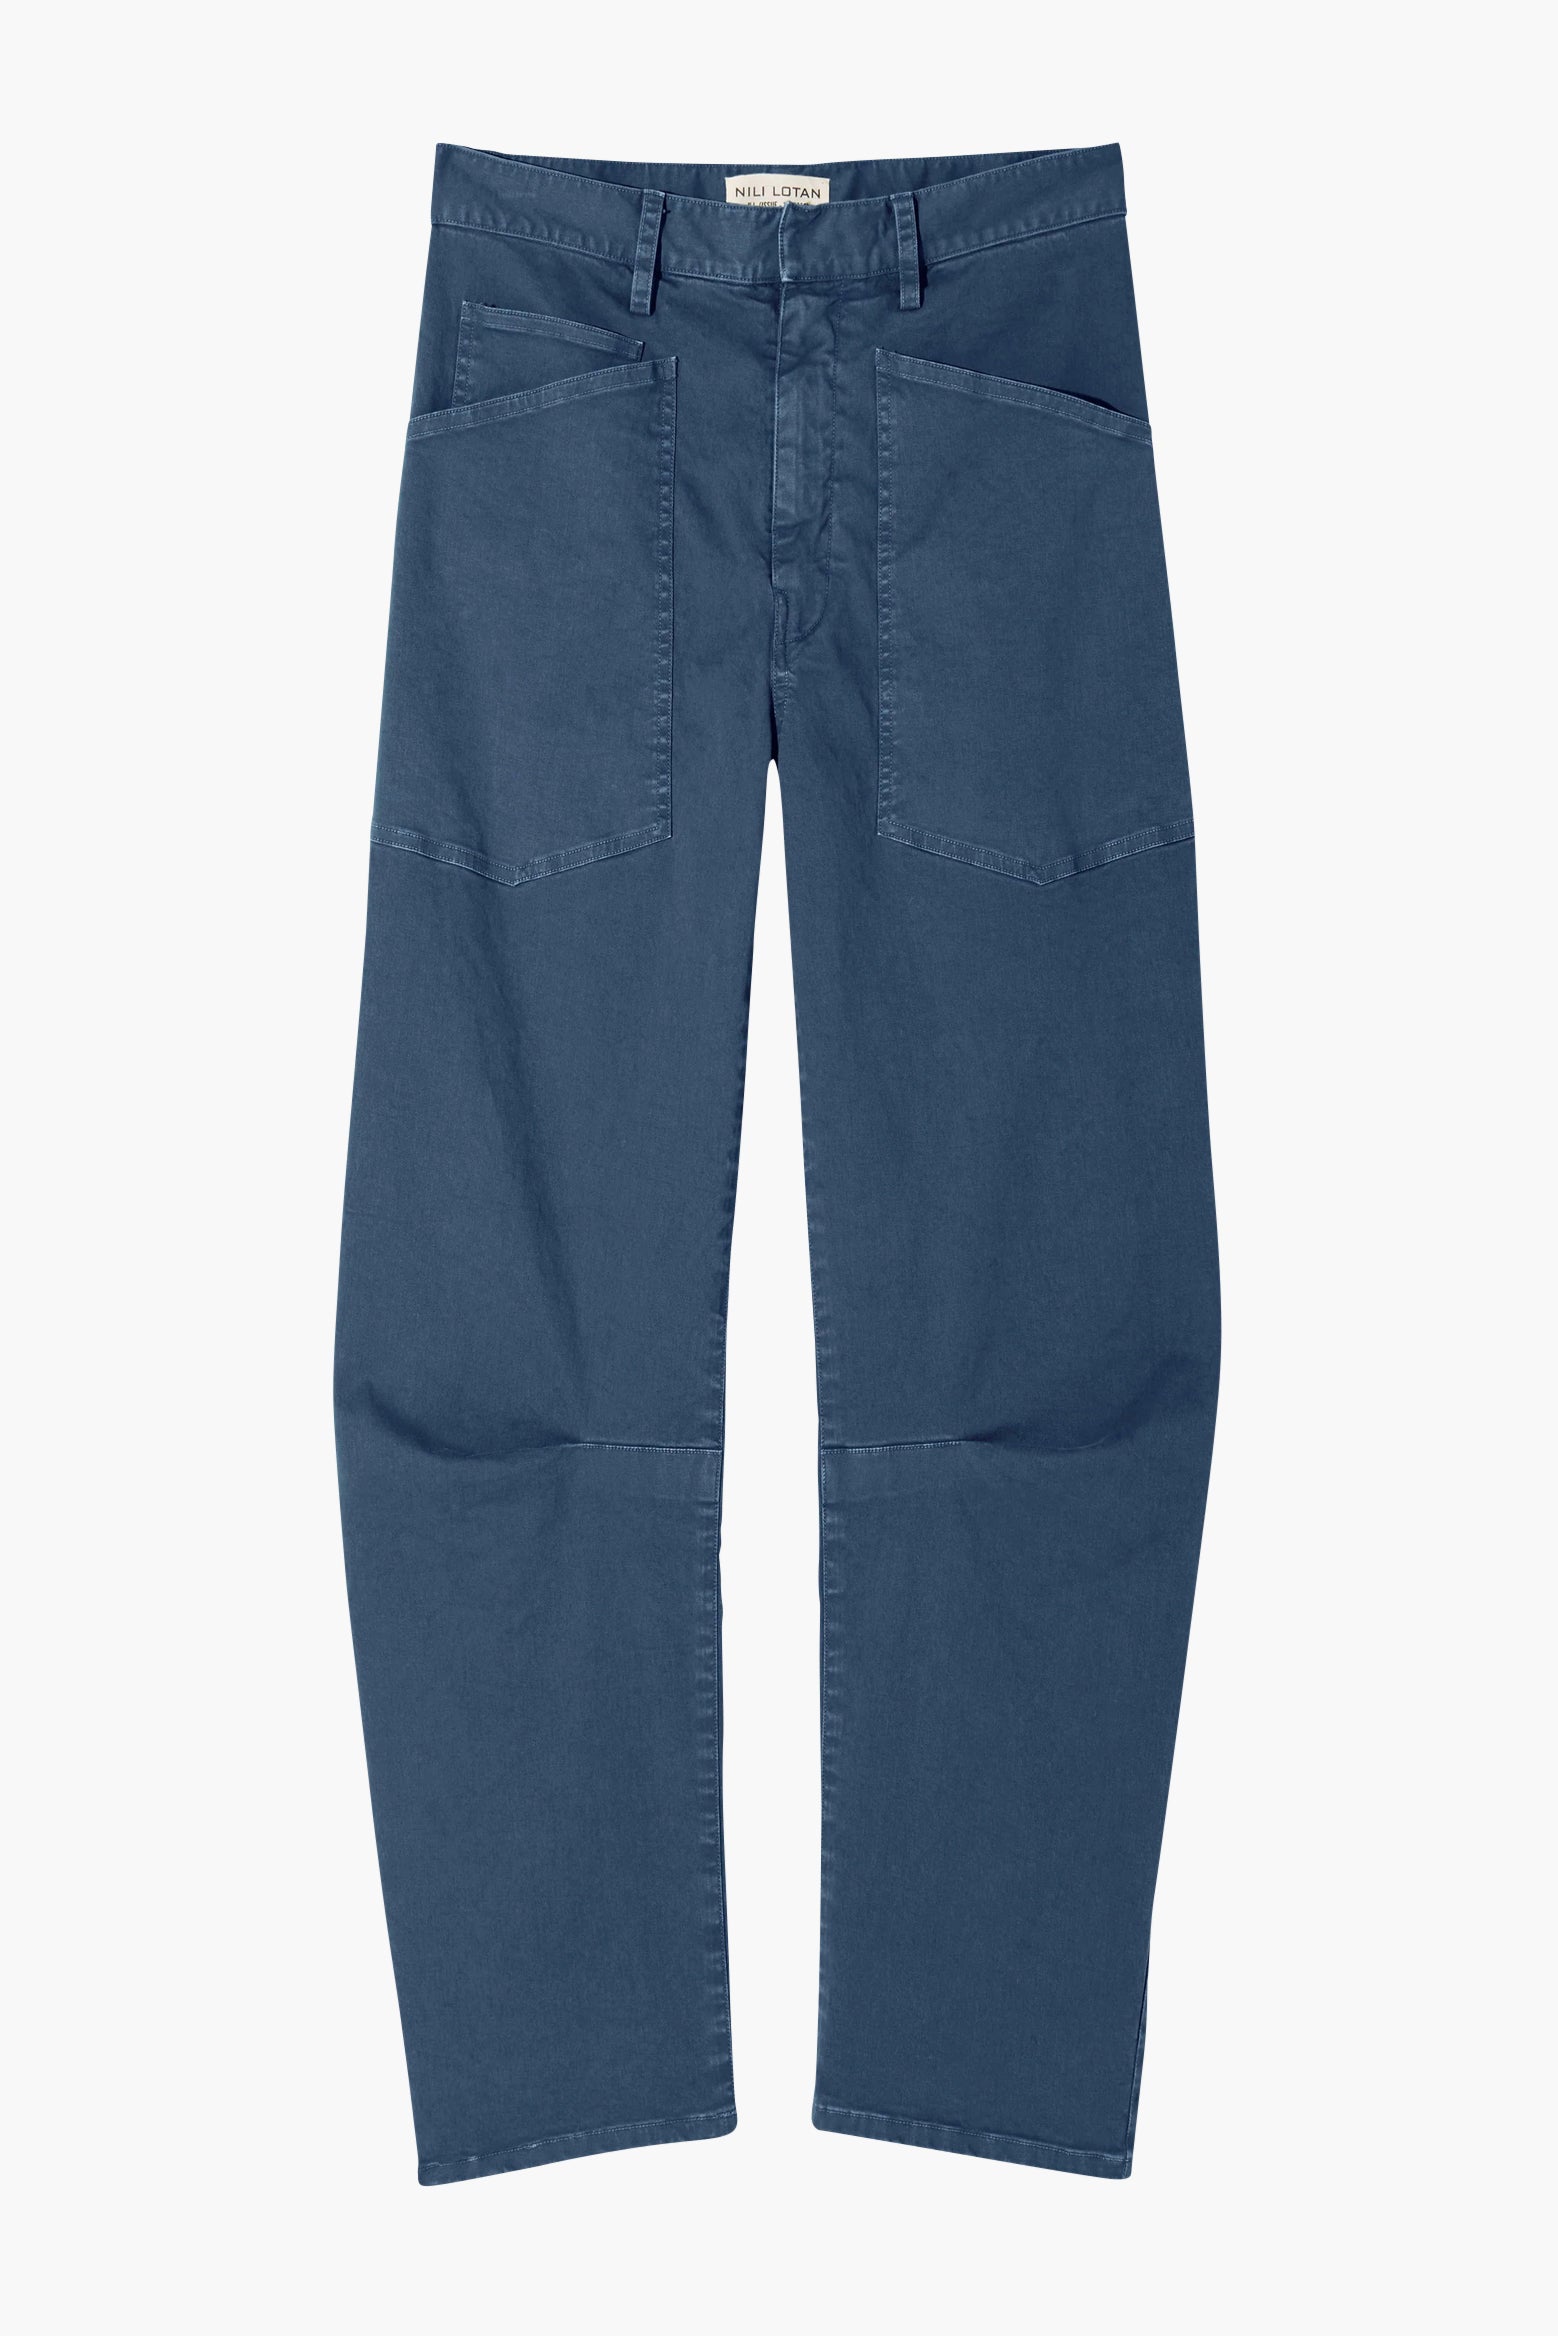 VENBER Pants for women dressy Paperbag Waist Slant Pocket Wide Leg Belted  Pants (Color : Cadet Blue, Size : L): Buy Online at Best Price in UAE -  Amazon.ae